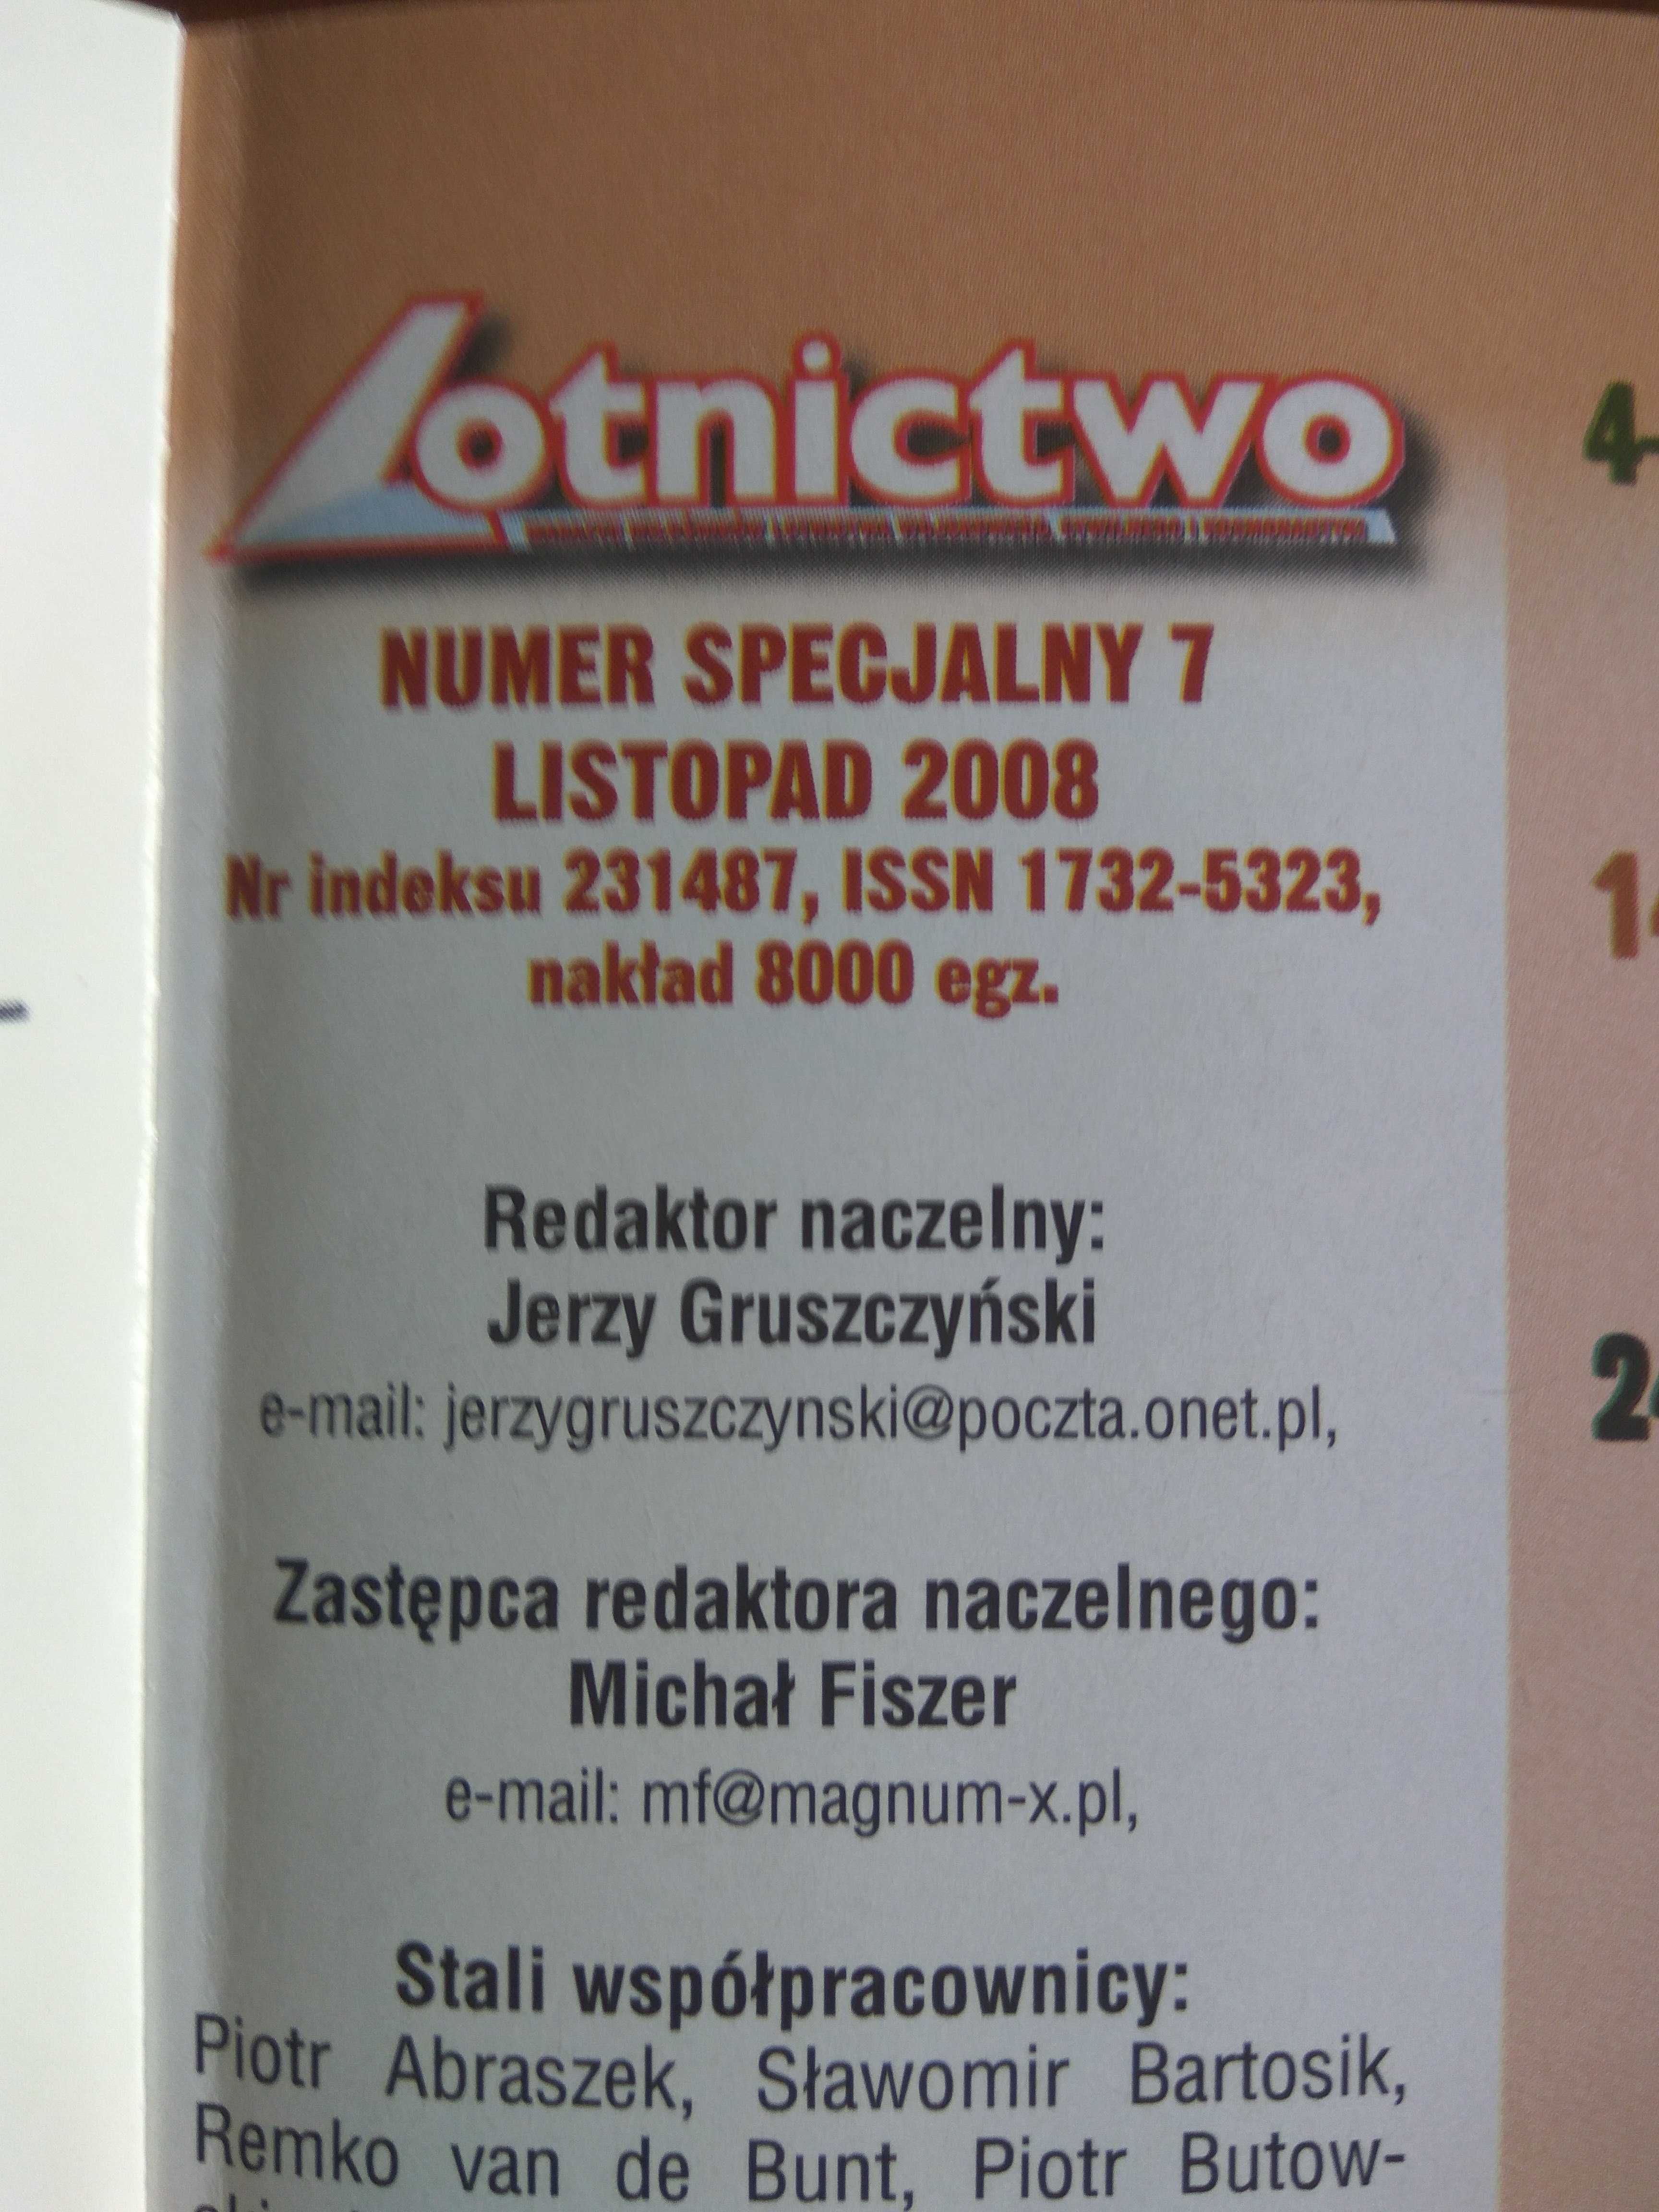 Czasopismo "Lotnictwo" numer specjalny 7 listopad 2008r.